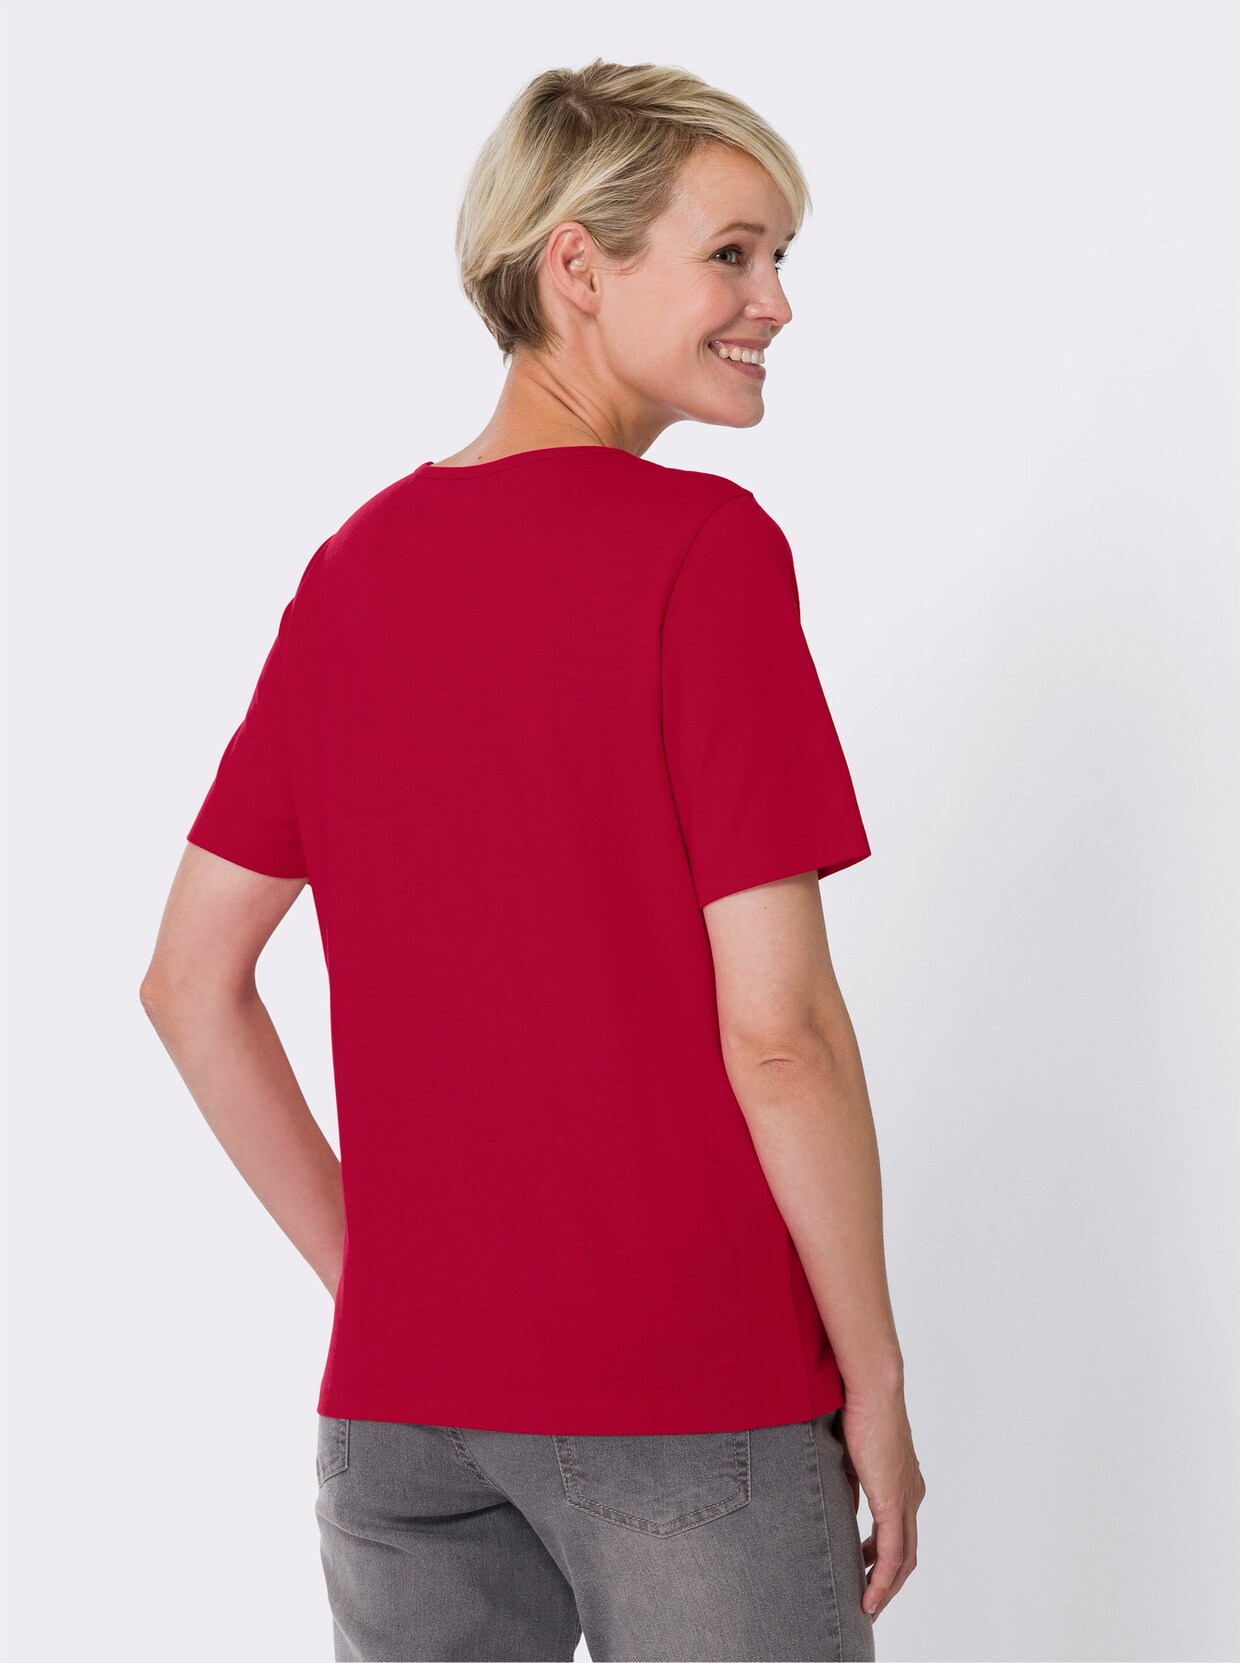 Tričko s krátkým rukávem - červená-kamenná šedá